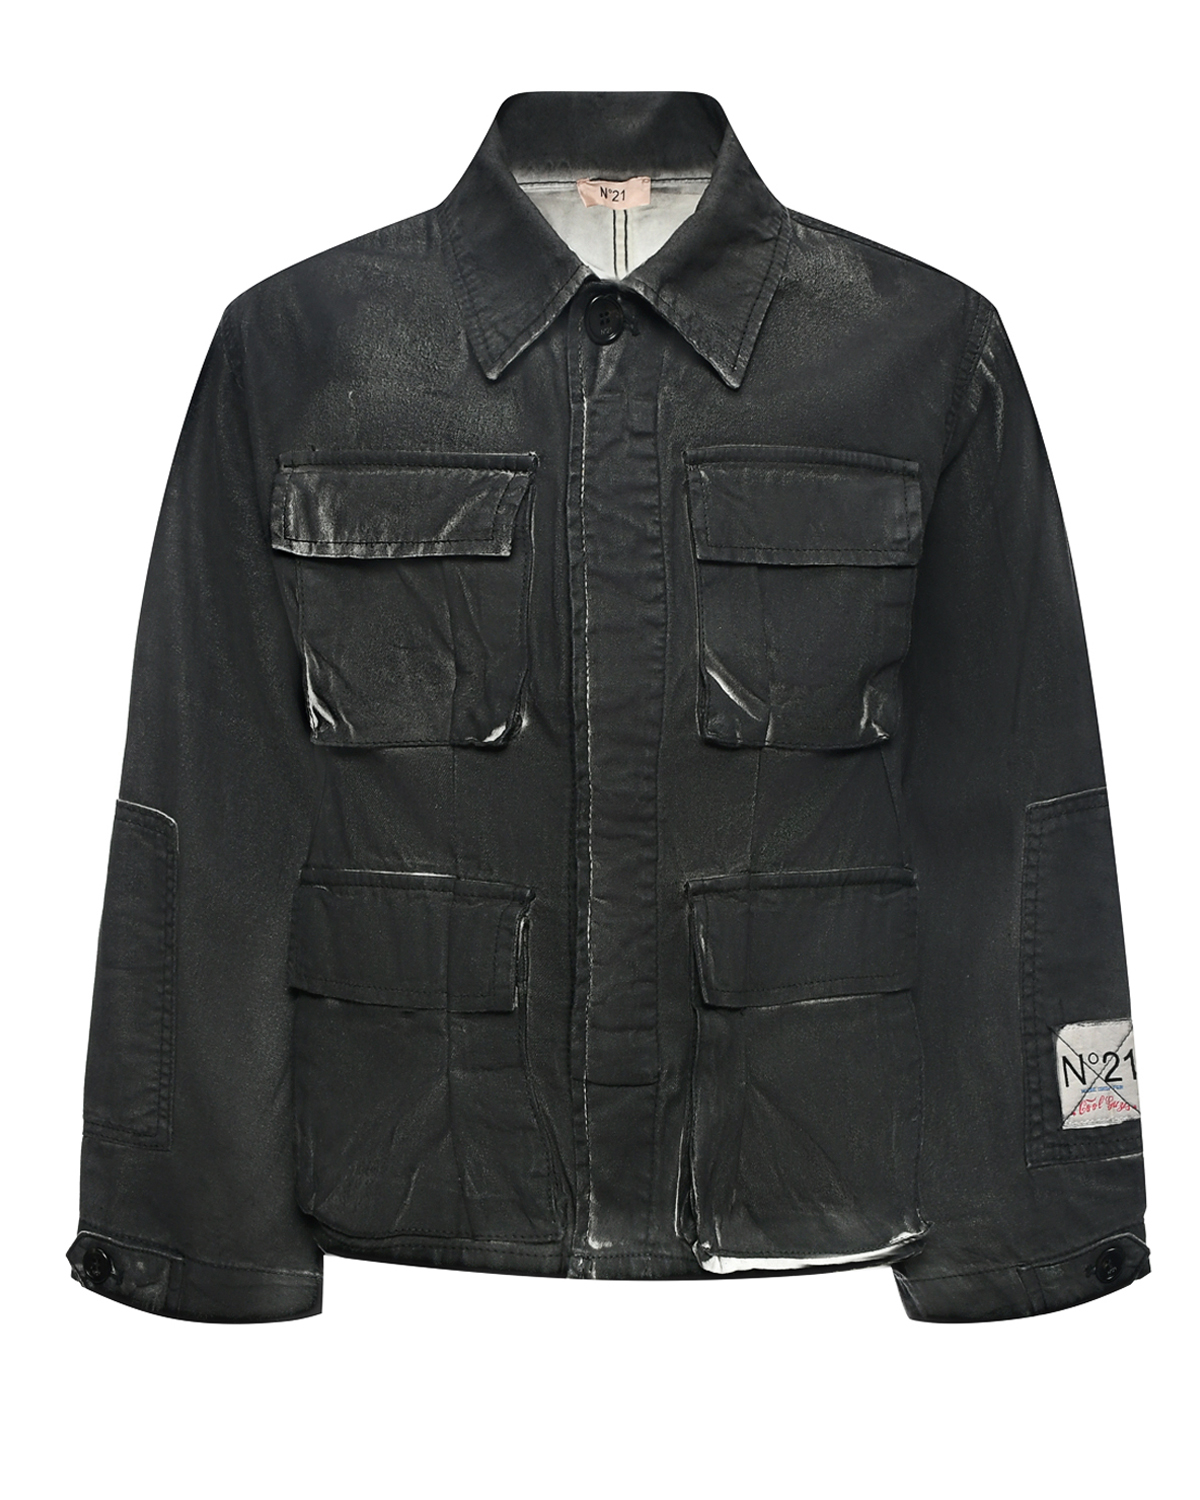 Джинсовая куртка с накладными карманами, черная No. 21, размер 164, цвет черный